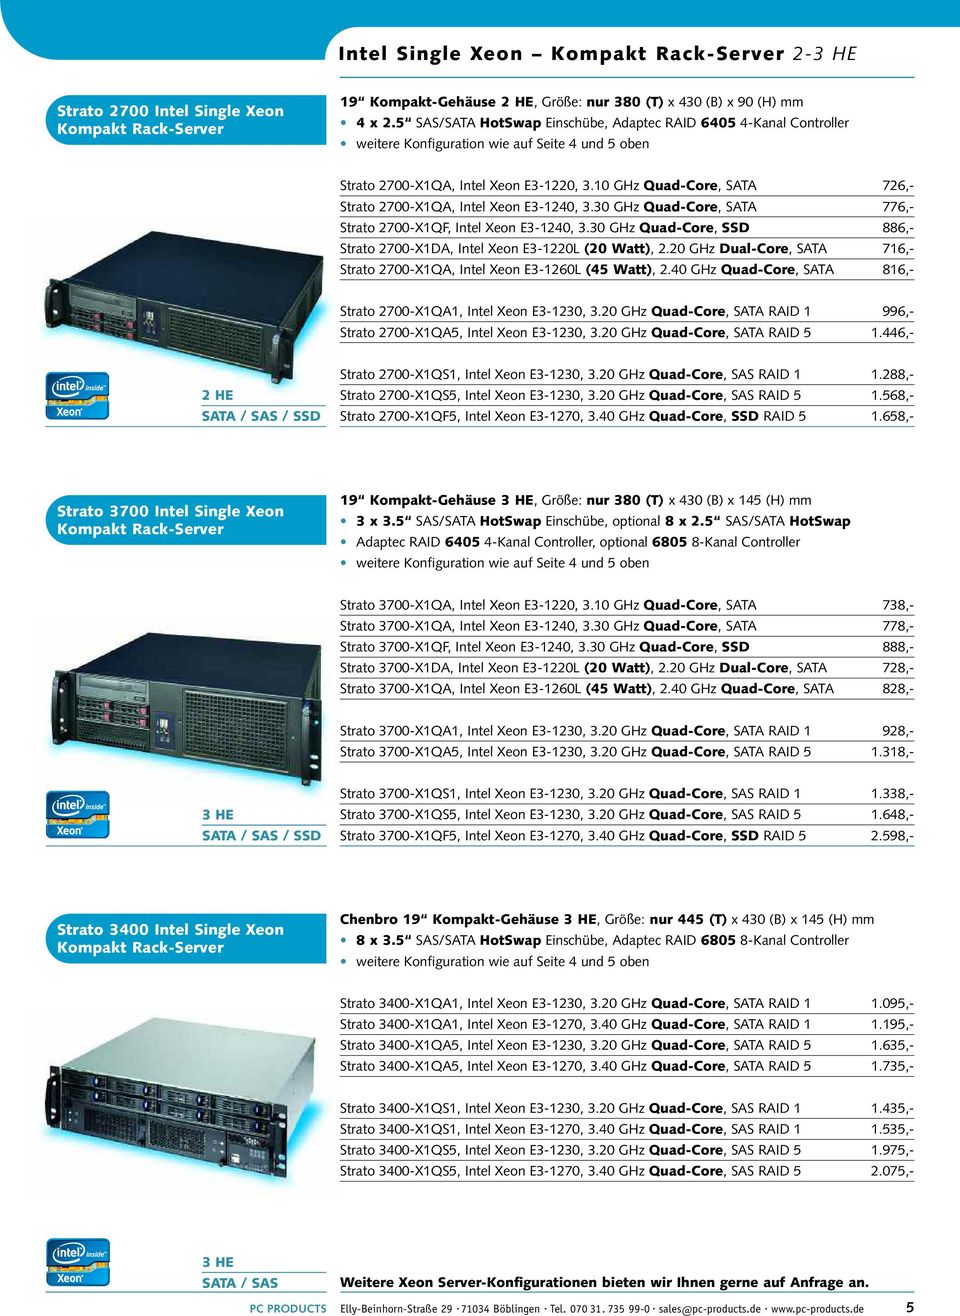 10 GHz Quad-Core, SATA 726,- Strato 2700-X1QA, Intel Xeon E3-1240, 3.30 GHz Quad-Core, SATA 776,- Strato 2700-X1QF, Intel Xeon E3-1240, 3.